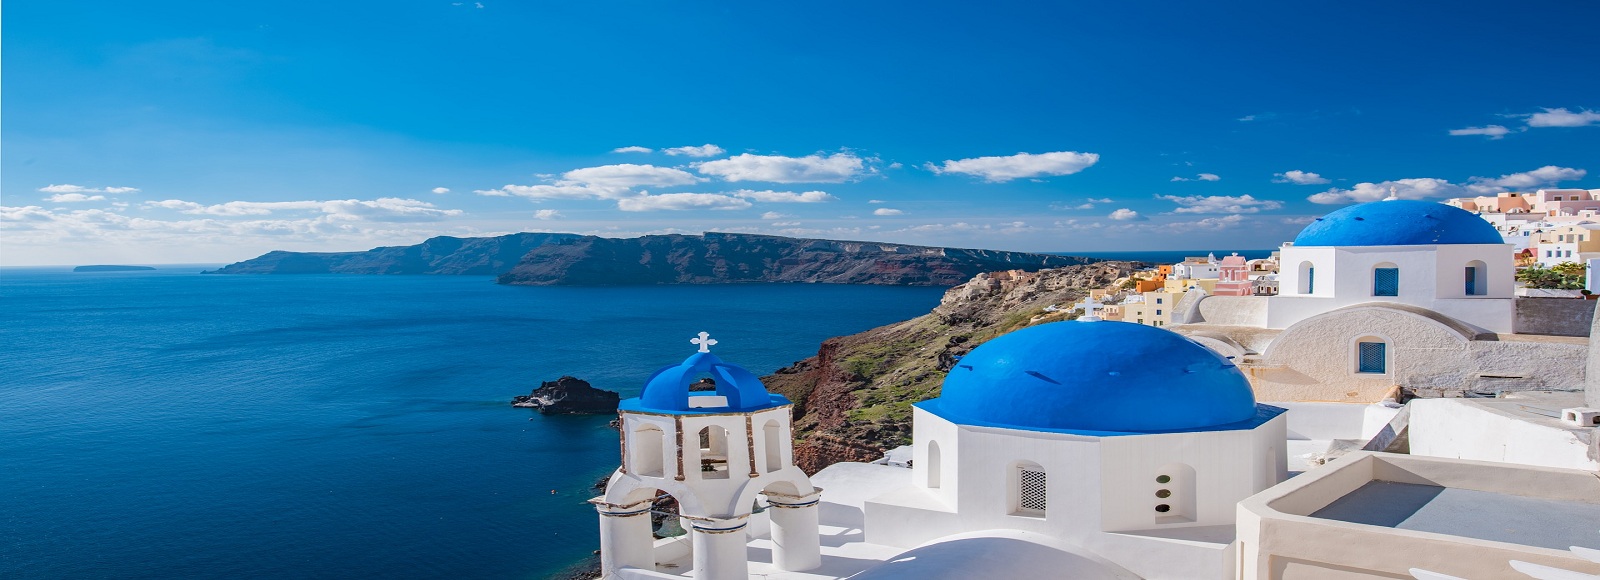 رحلات للشواطئ اليونان  اليونان 